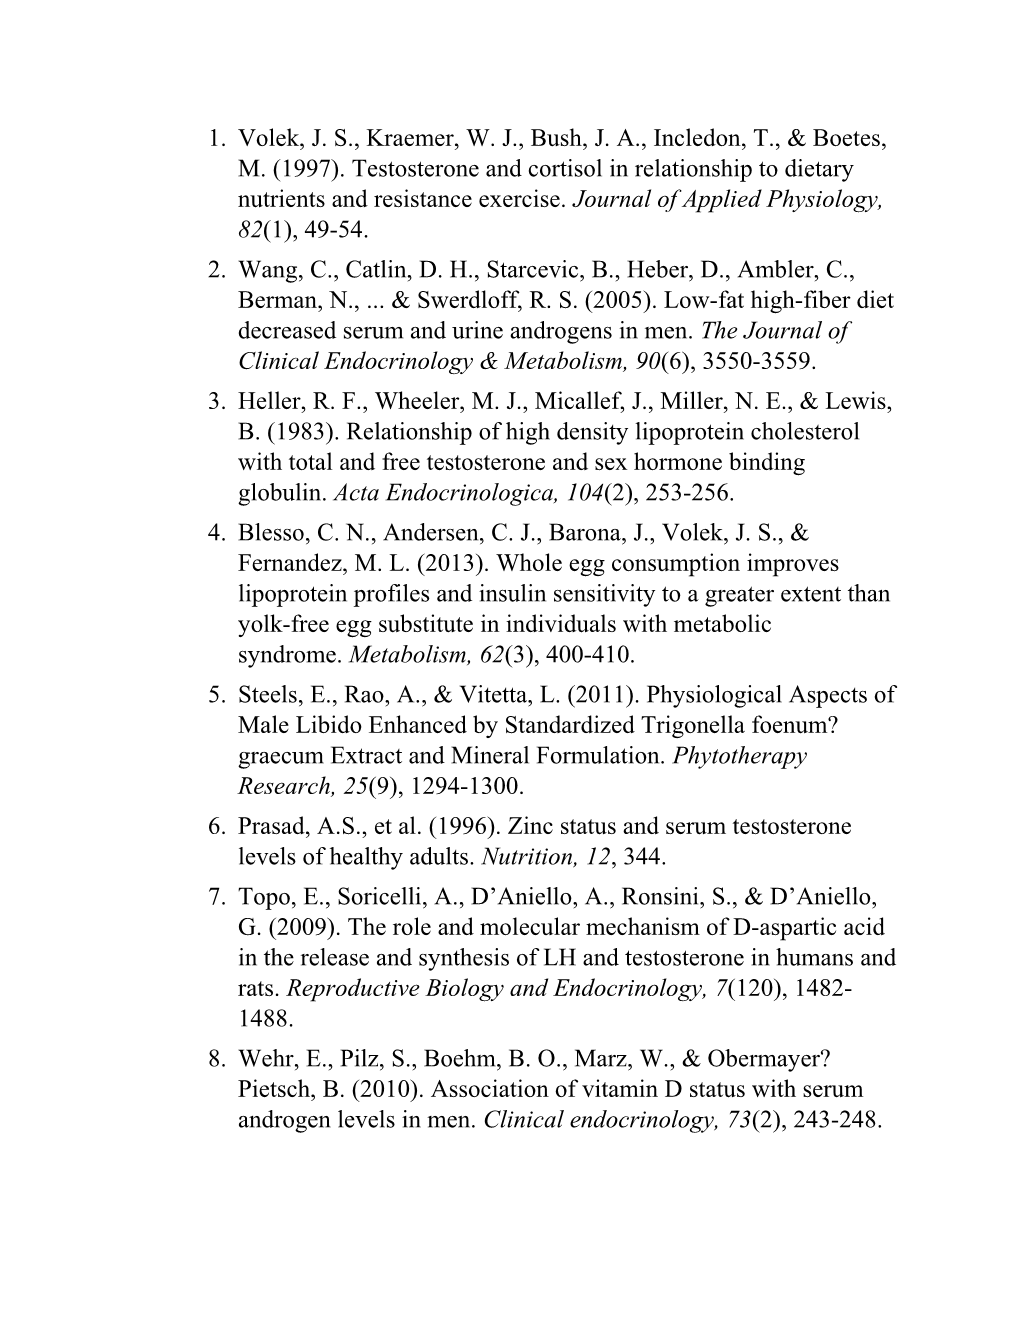 Volek, J. S., Kraemer, W. J., Bush, J. A., Incledon, T., & Boetes, M. (1997). Testosterone